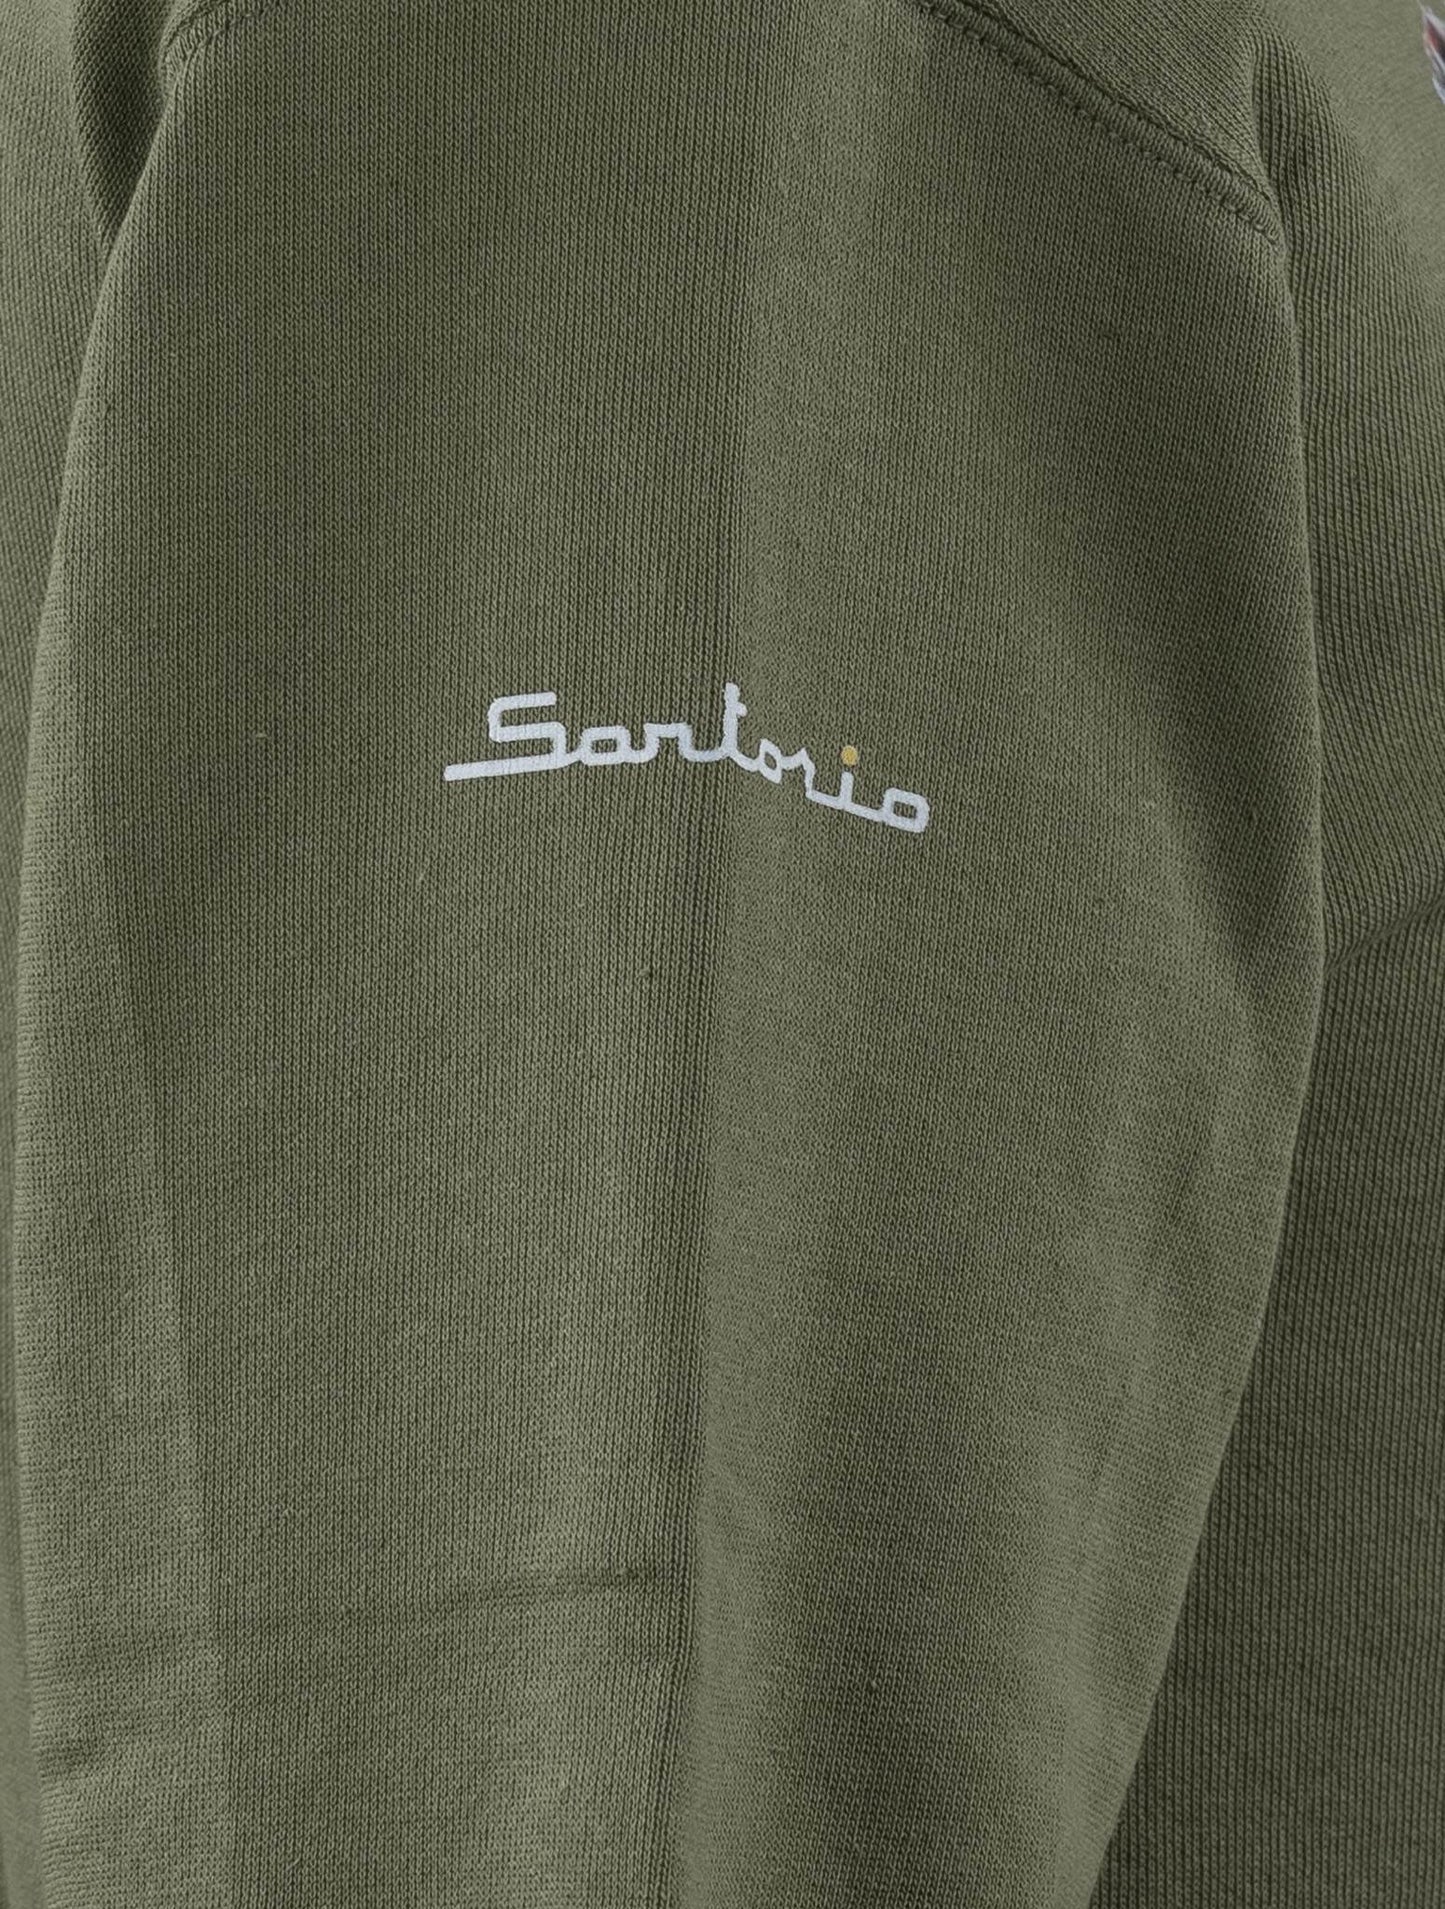 Sartorio Napoli Pullover aus grüner Baumwolle Sonderausgabe